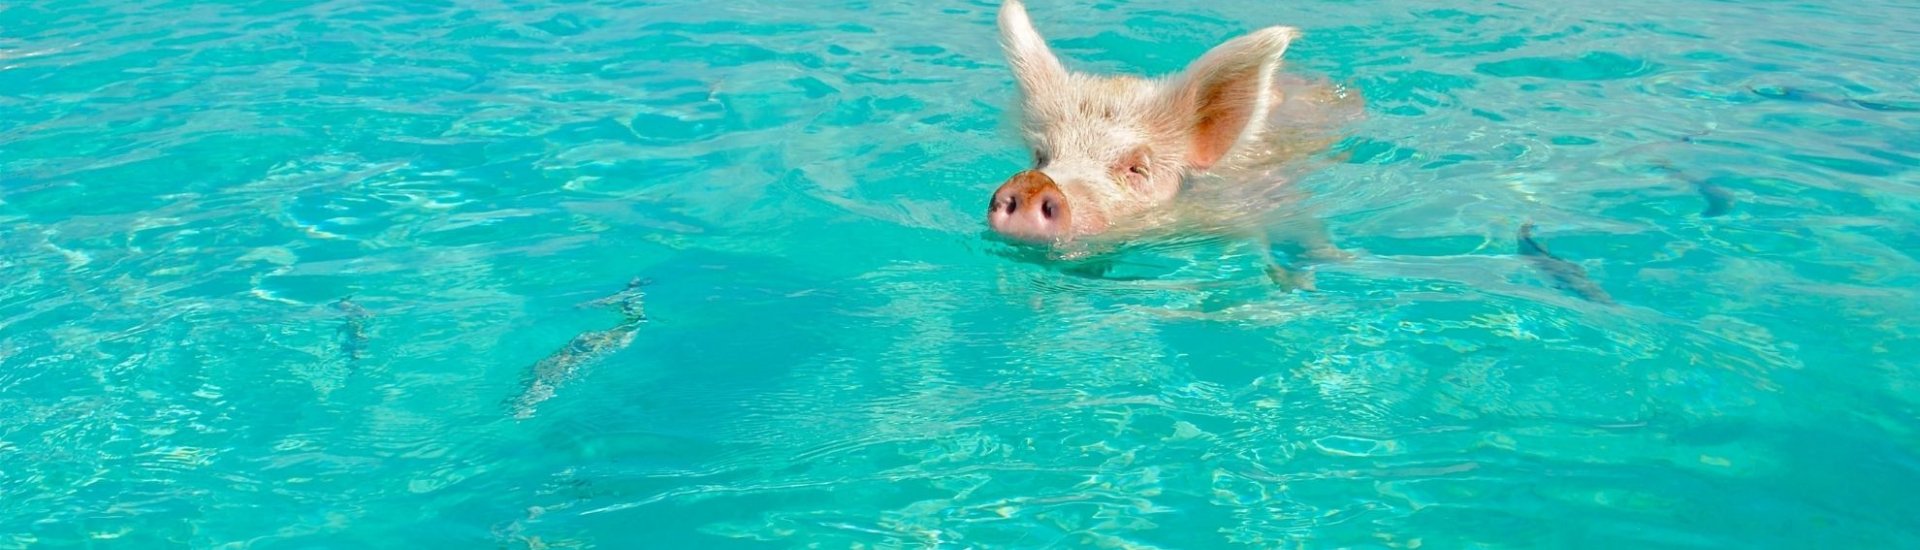 Bahamas Swimming Pig